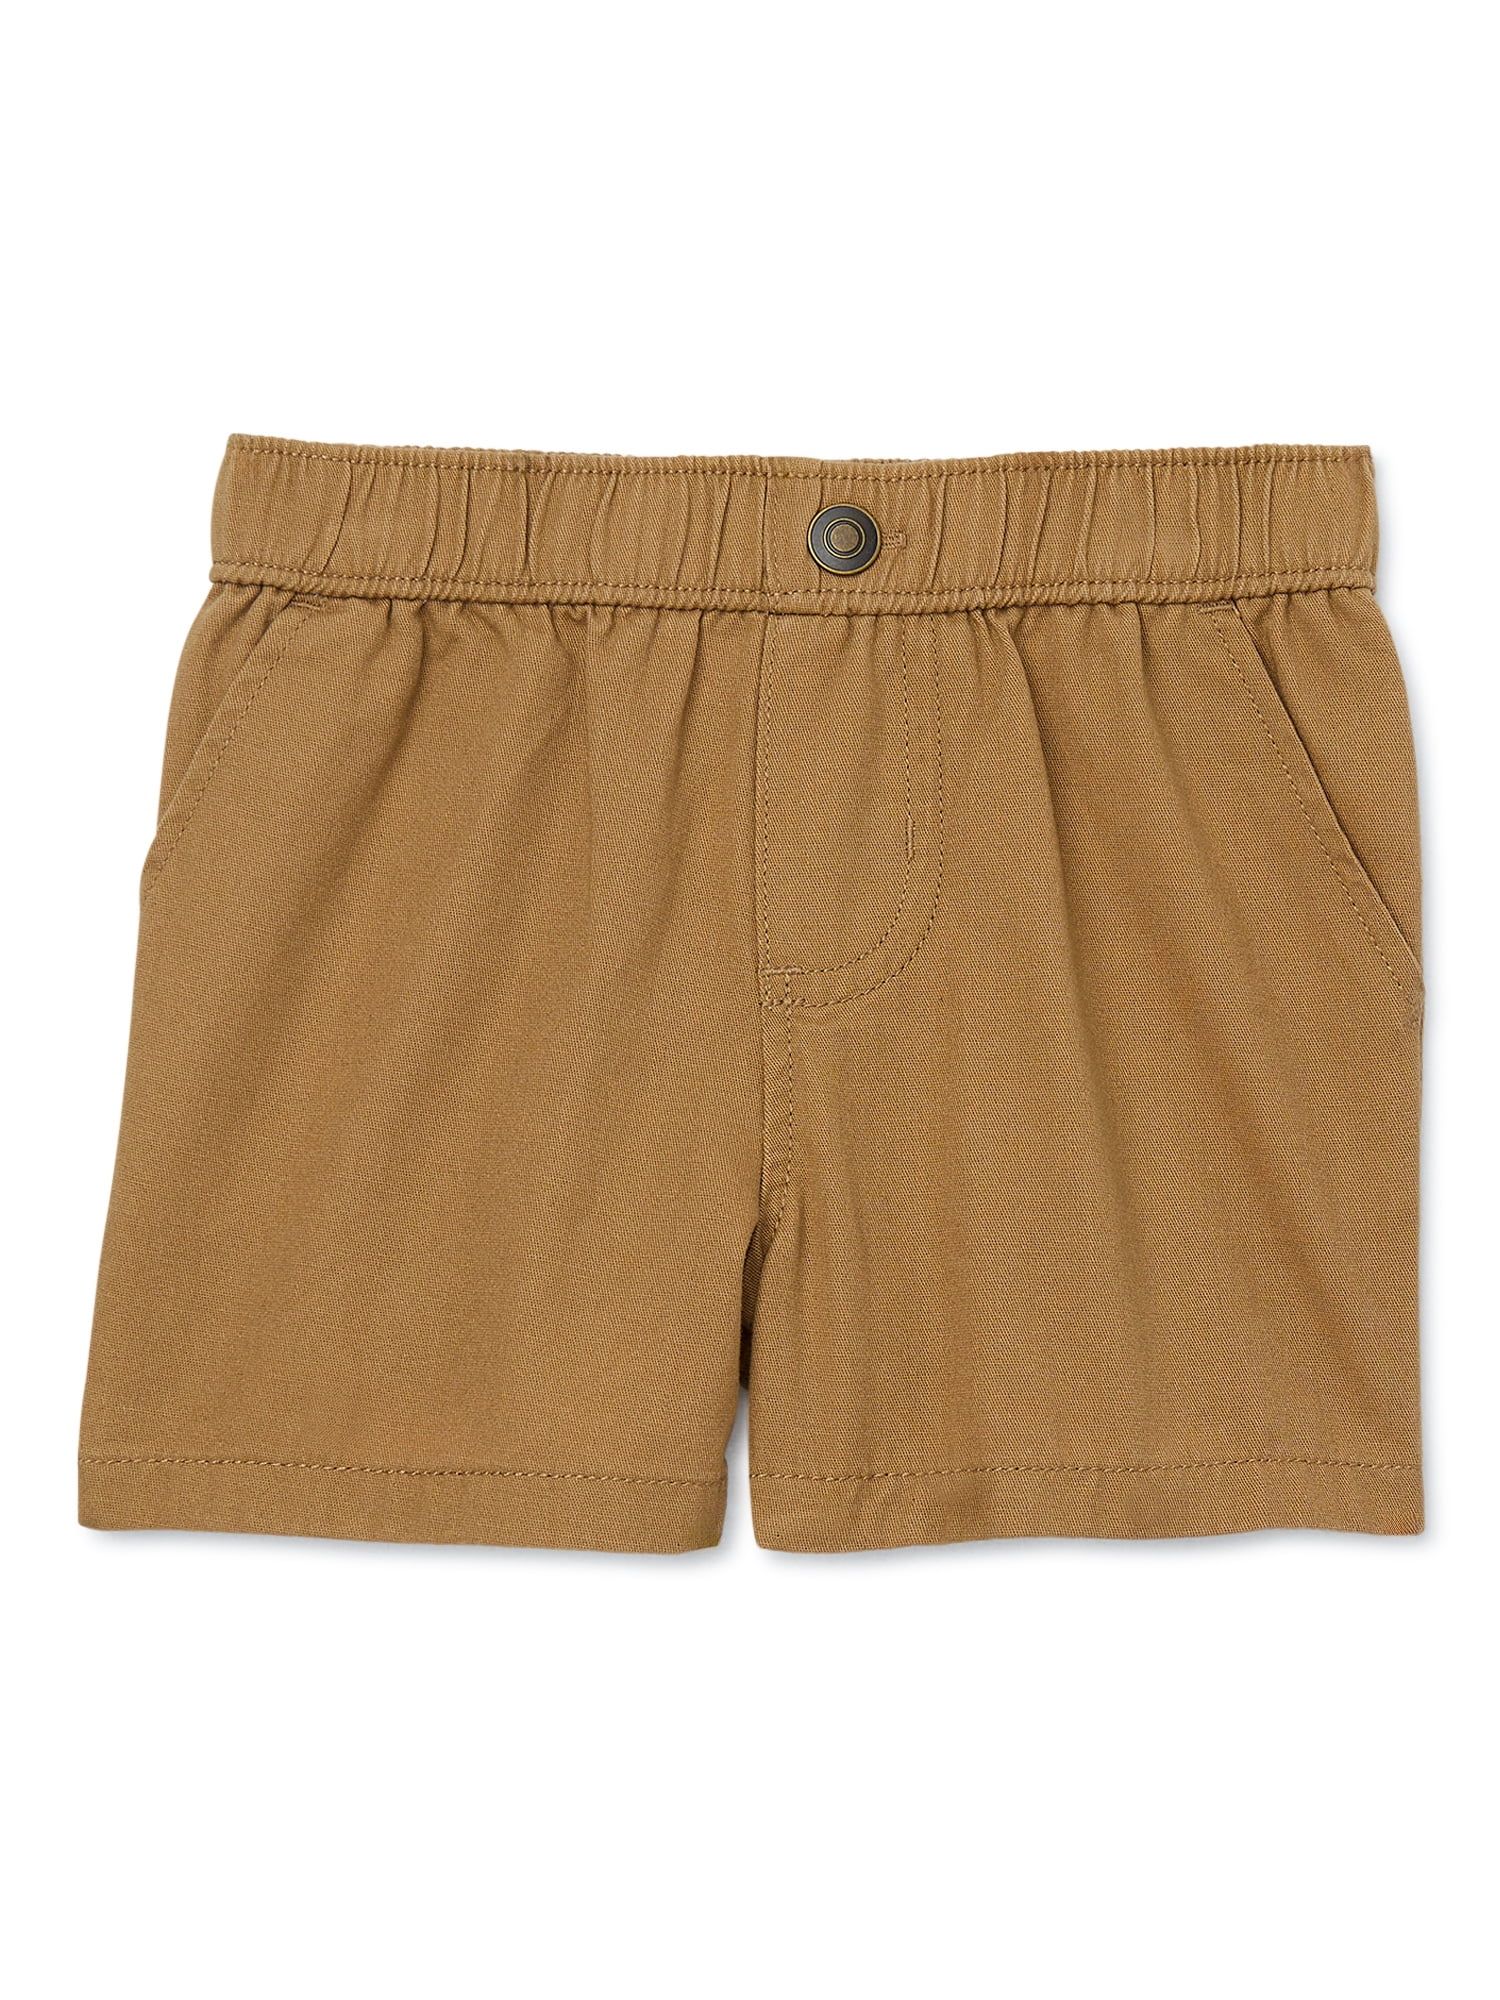 Garanimals Baby Boy Twill Shorts, Sizes 0-24 Months | Walmart (US)